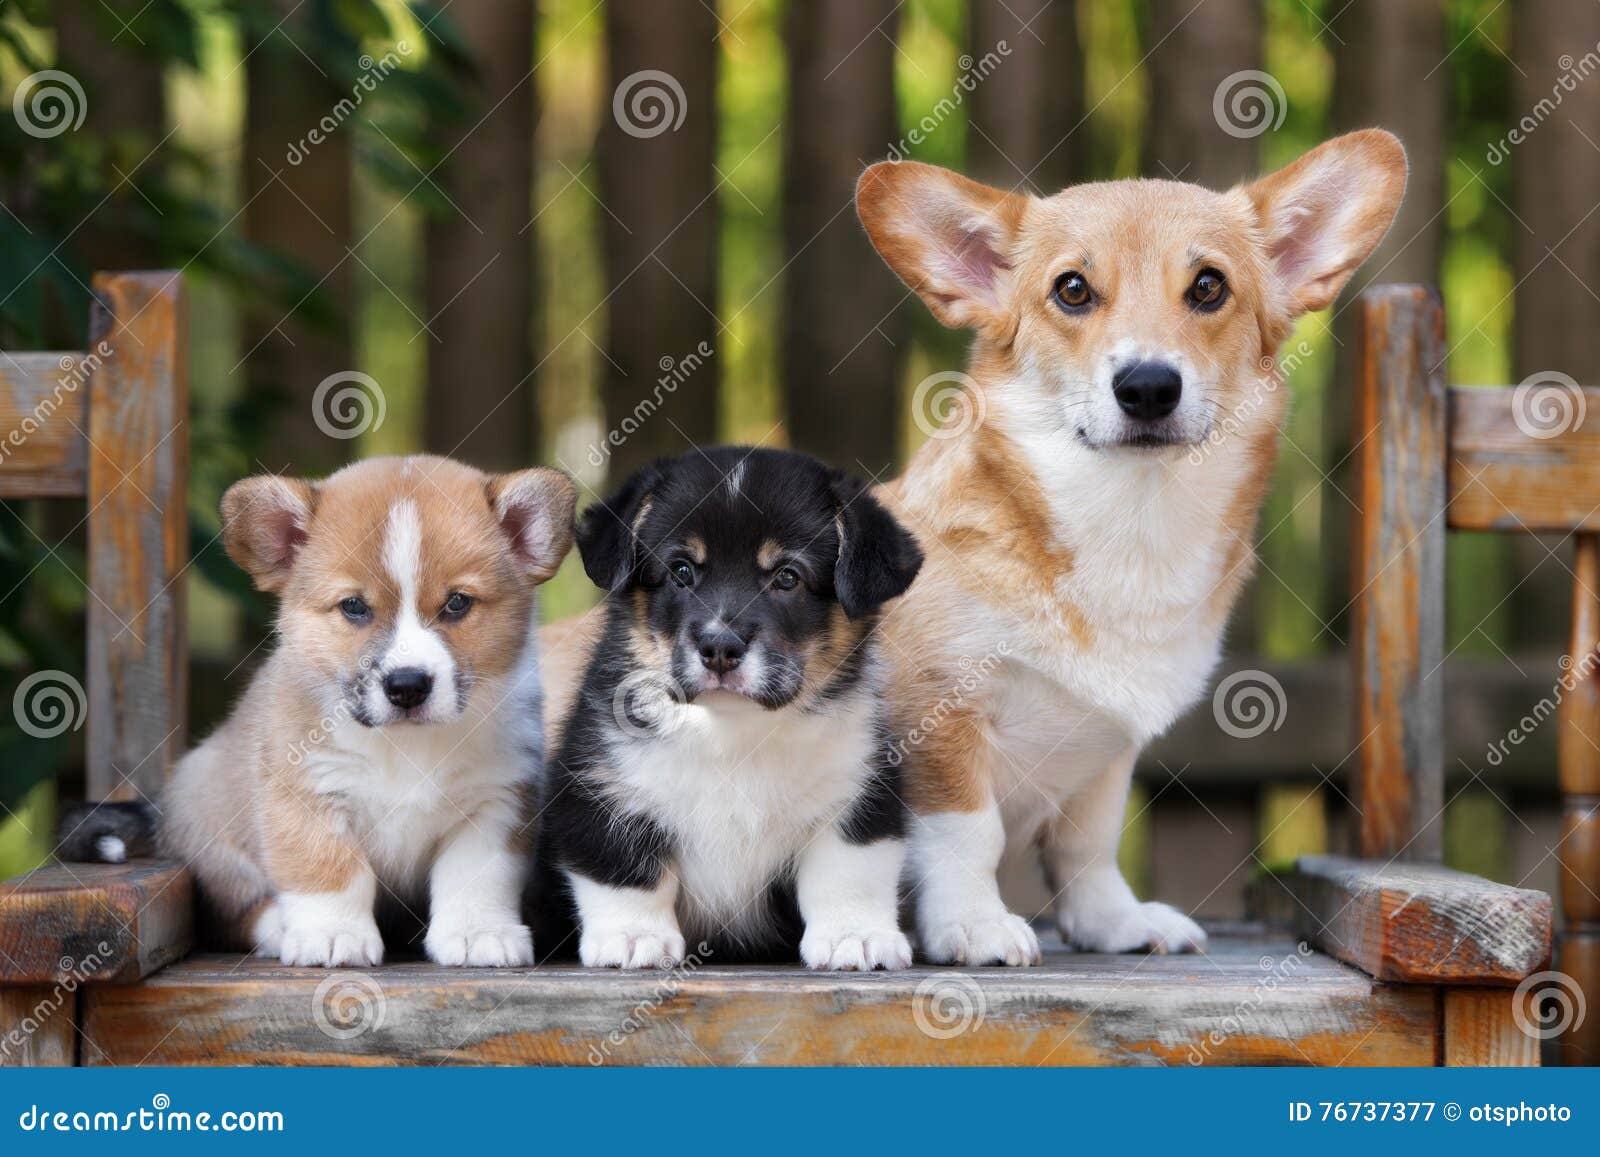 1,777 Corgi Puppies Stock Photos - Free & Royalty-Free Stock